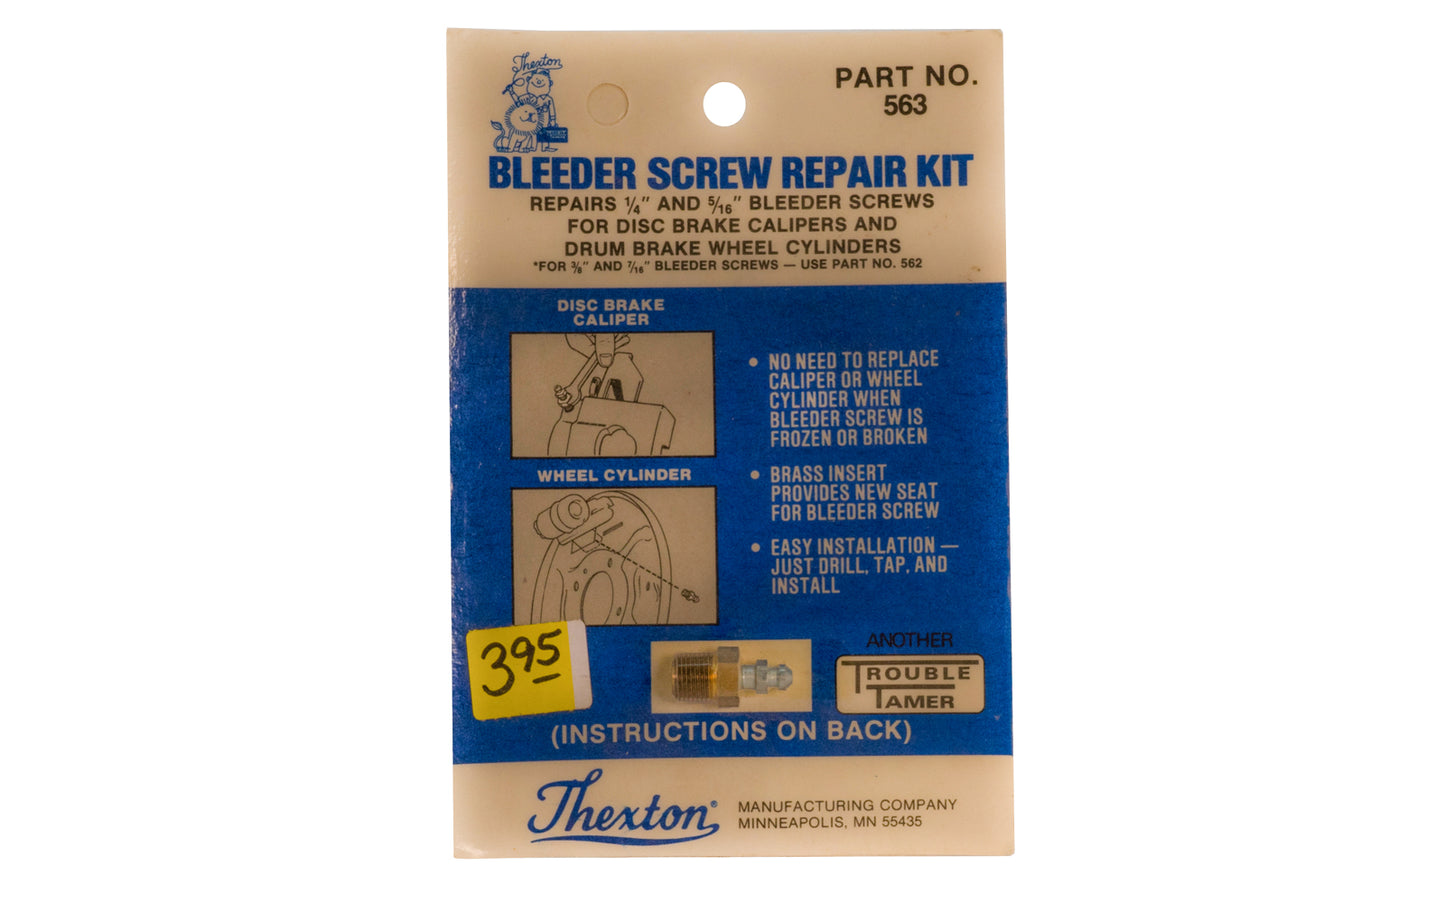 Thexton Bleeder Screw Repair Kit. Part No. 563.  Thexton Manufacturing Company, Minneapolis MINN.